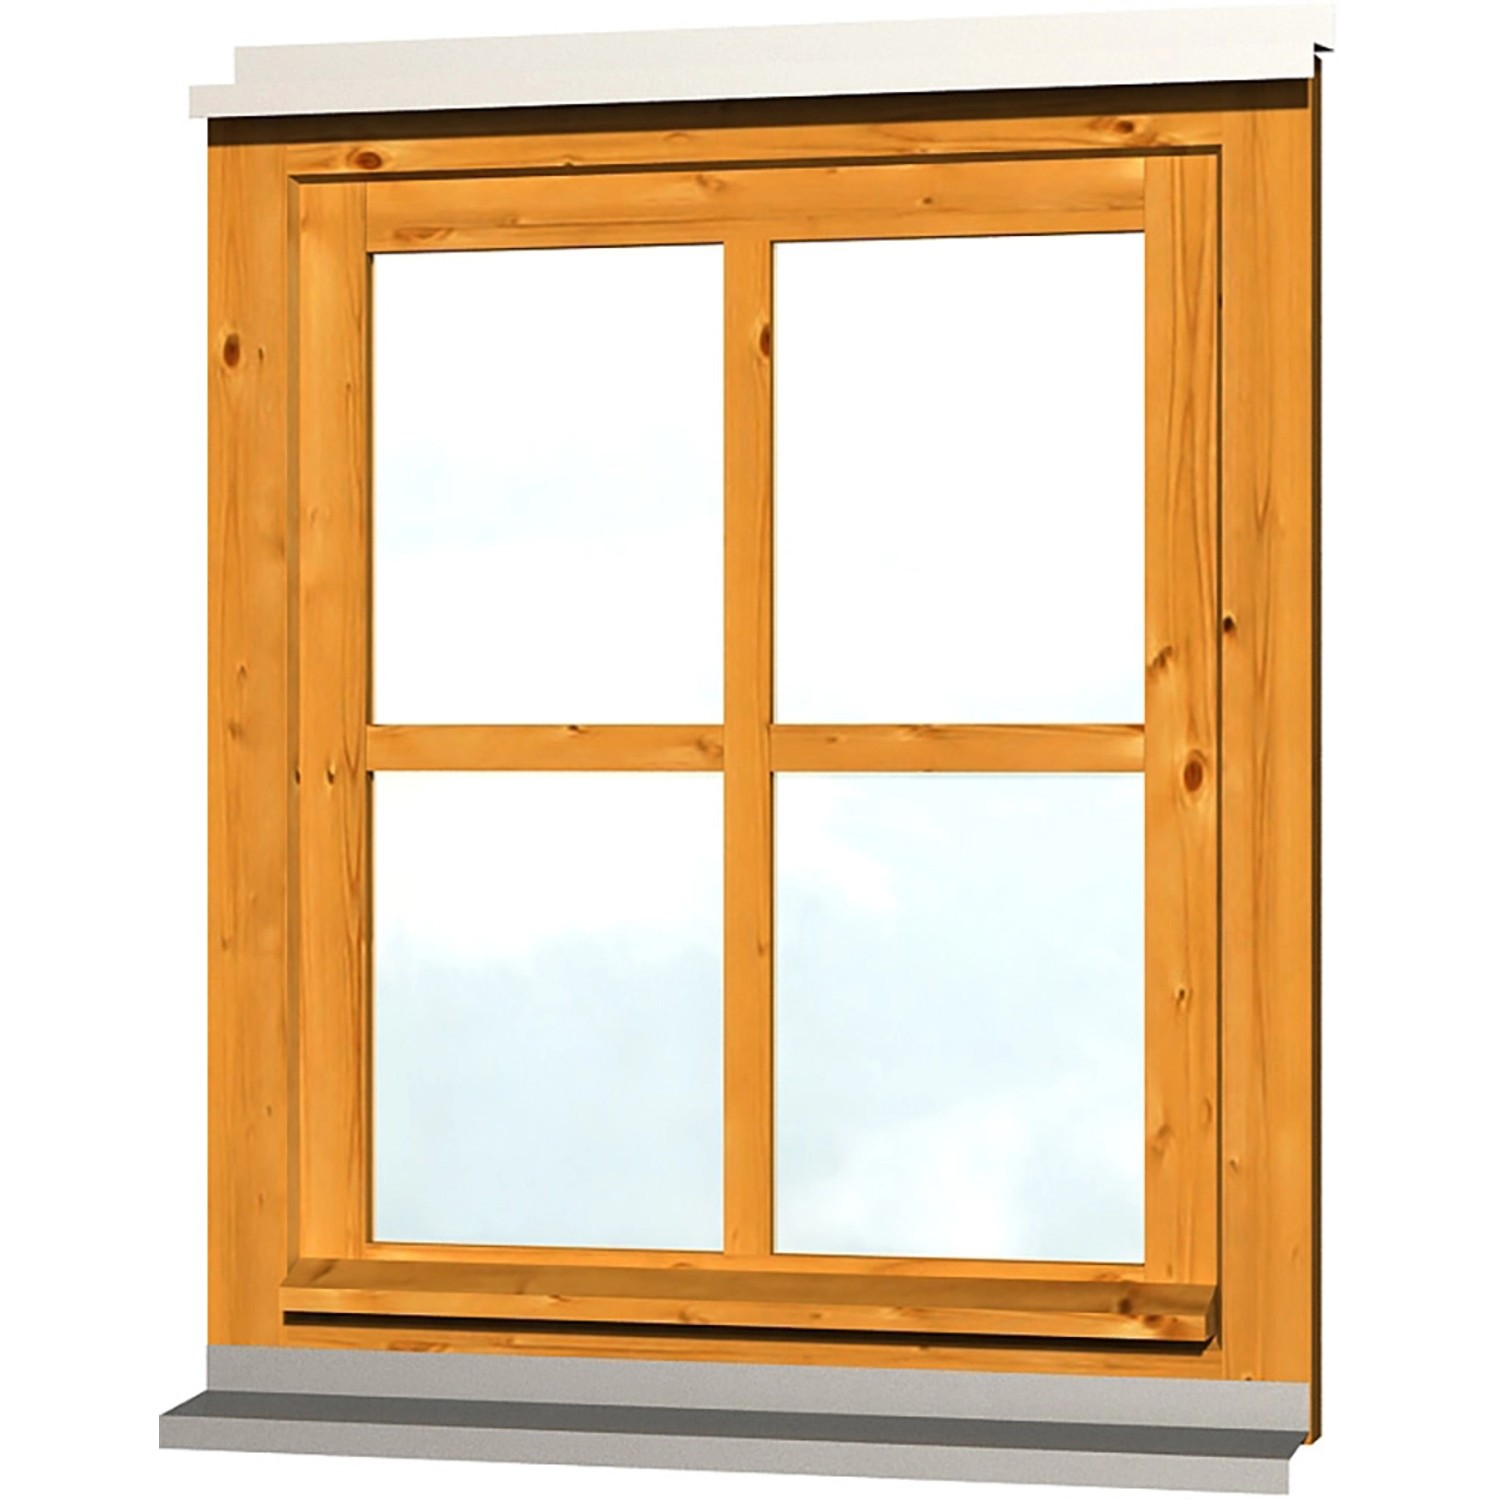 Skan Holz Einzelfenster Rahmenaußenmaß 69,1 x 82,1 cm Eiche hell von Skan Holz